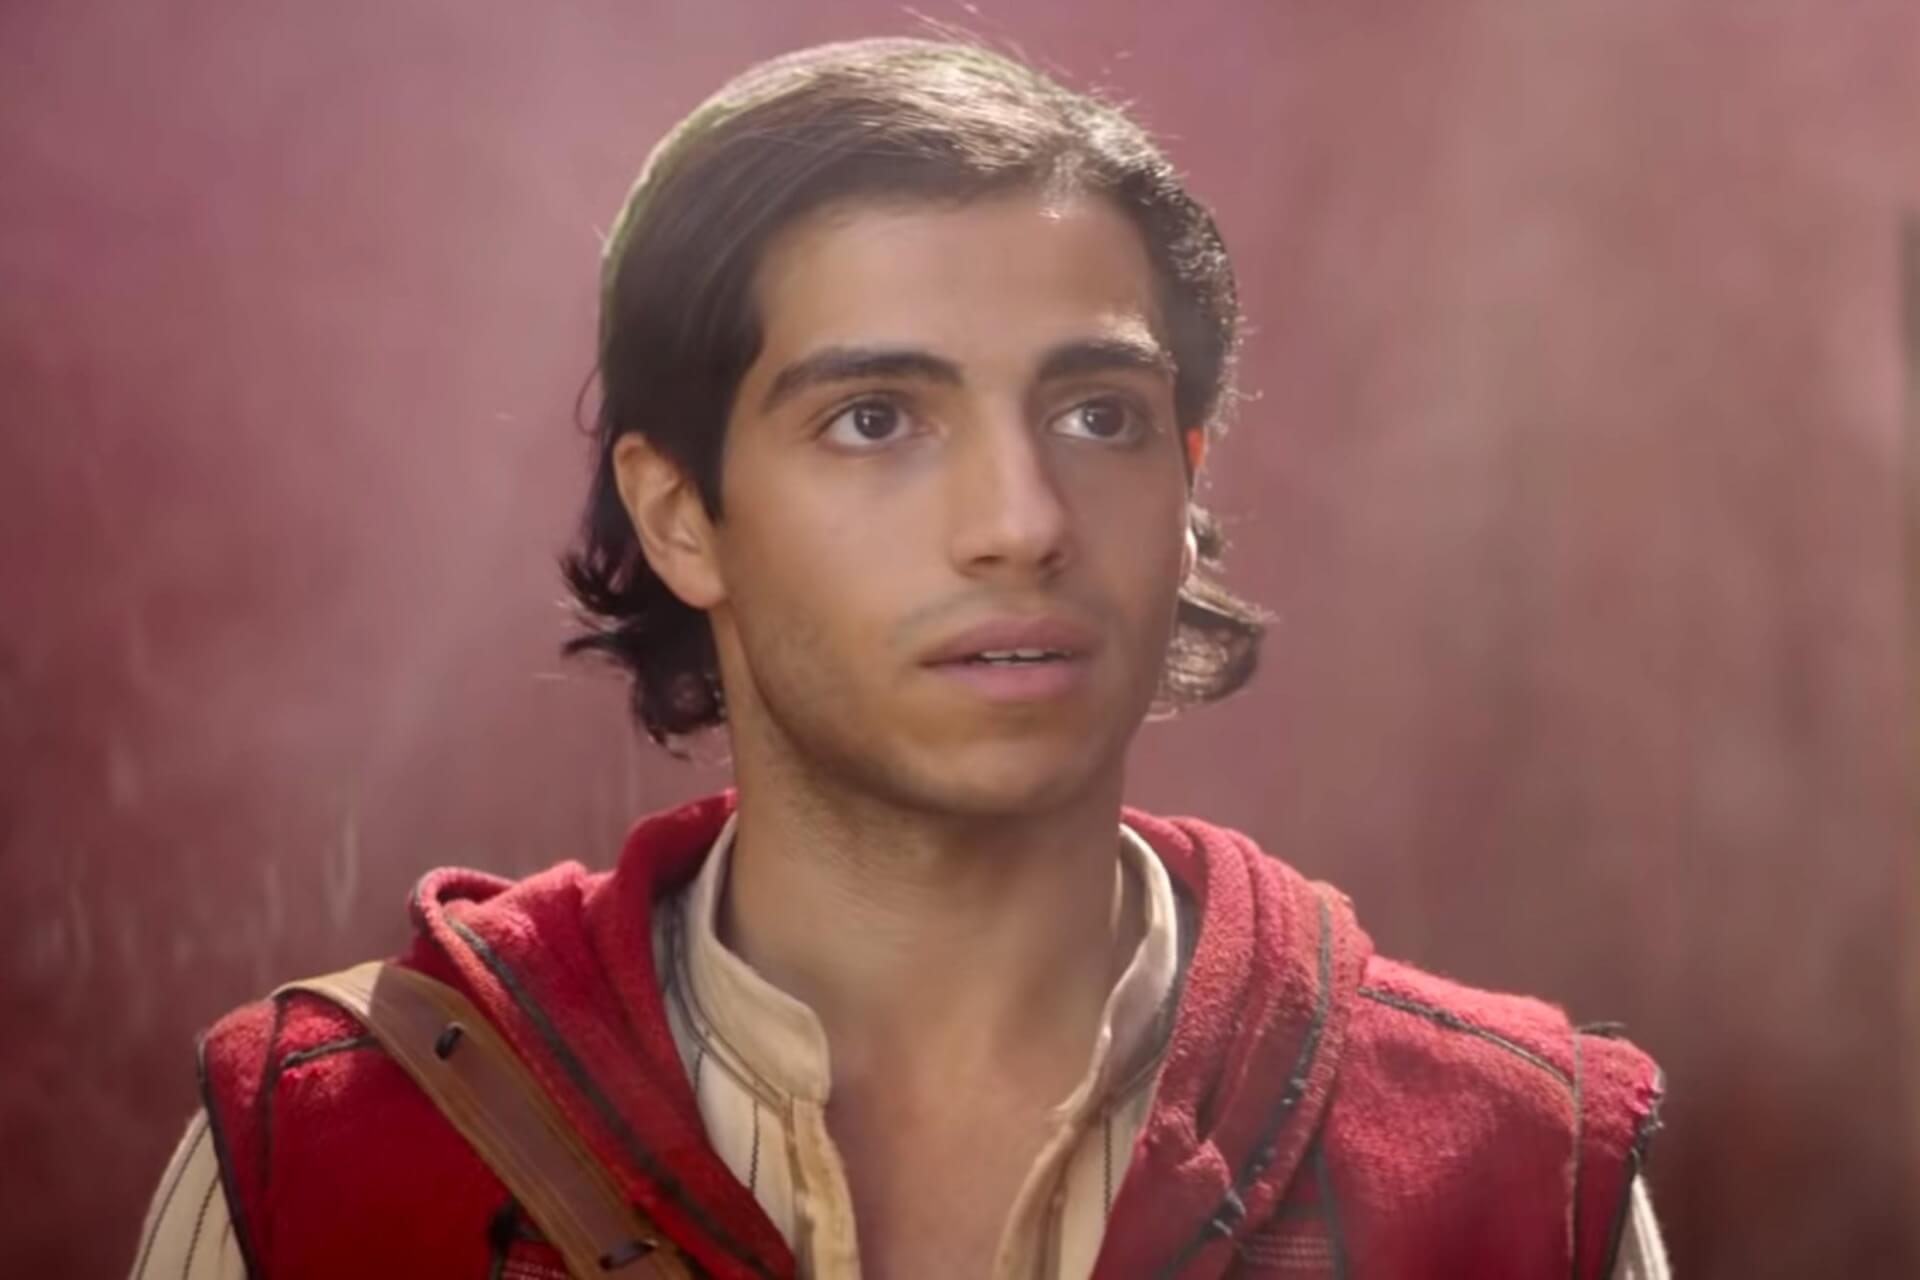 Az Aladdin sztárját, Mena Massoudot szemelték ki az élőszereplős Ezra Bridger szerepére az Ahsoka-sorozatban?